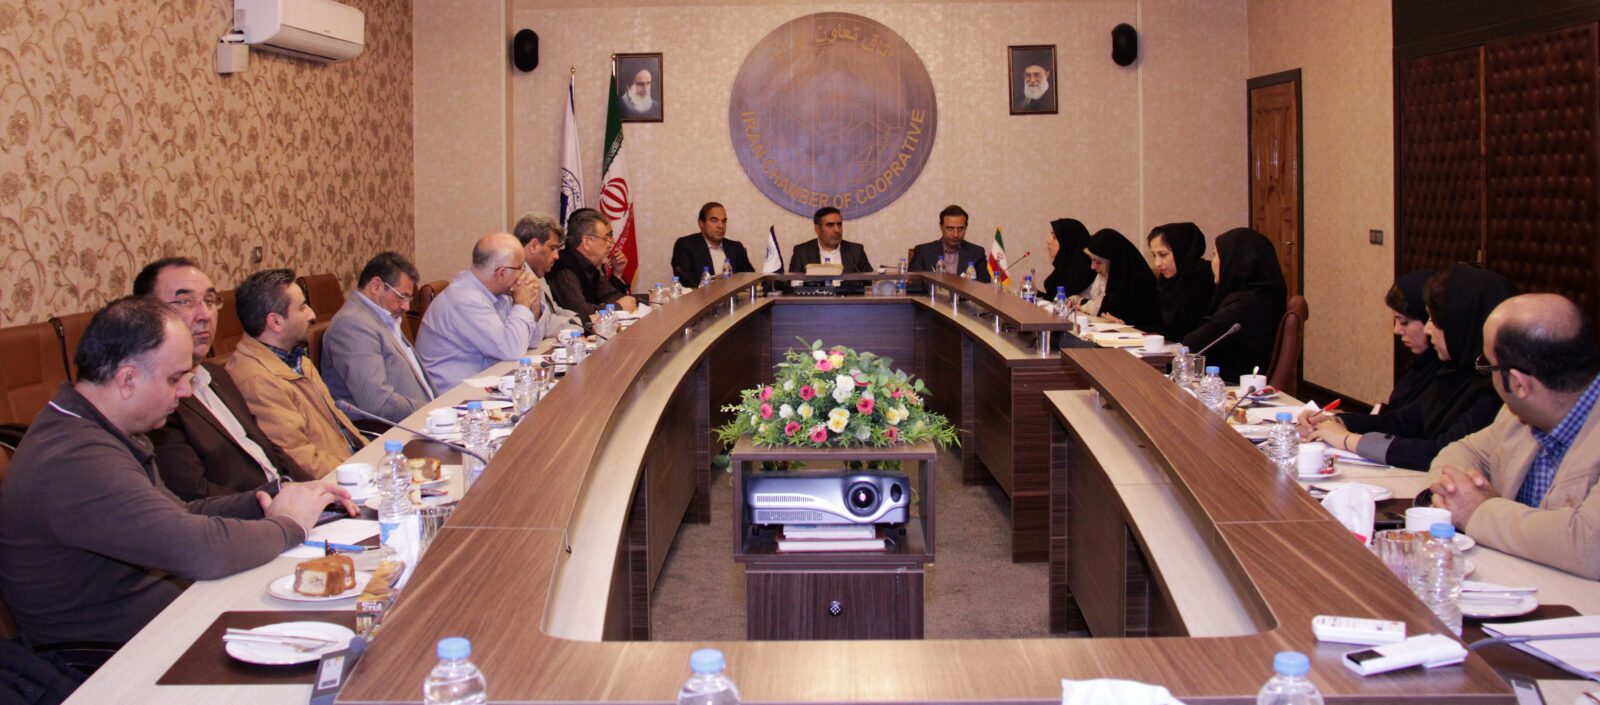 10محور در شورای سرمایه گذاری اتاق تعاون ایران بررسی شد